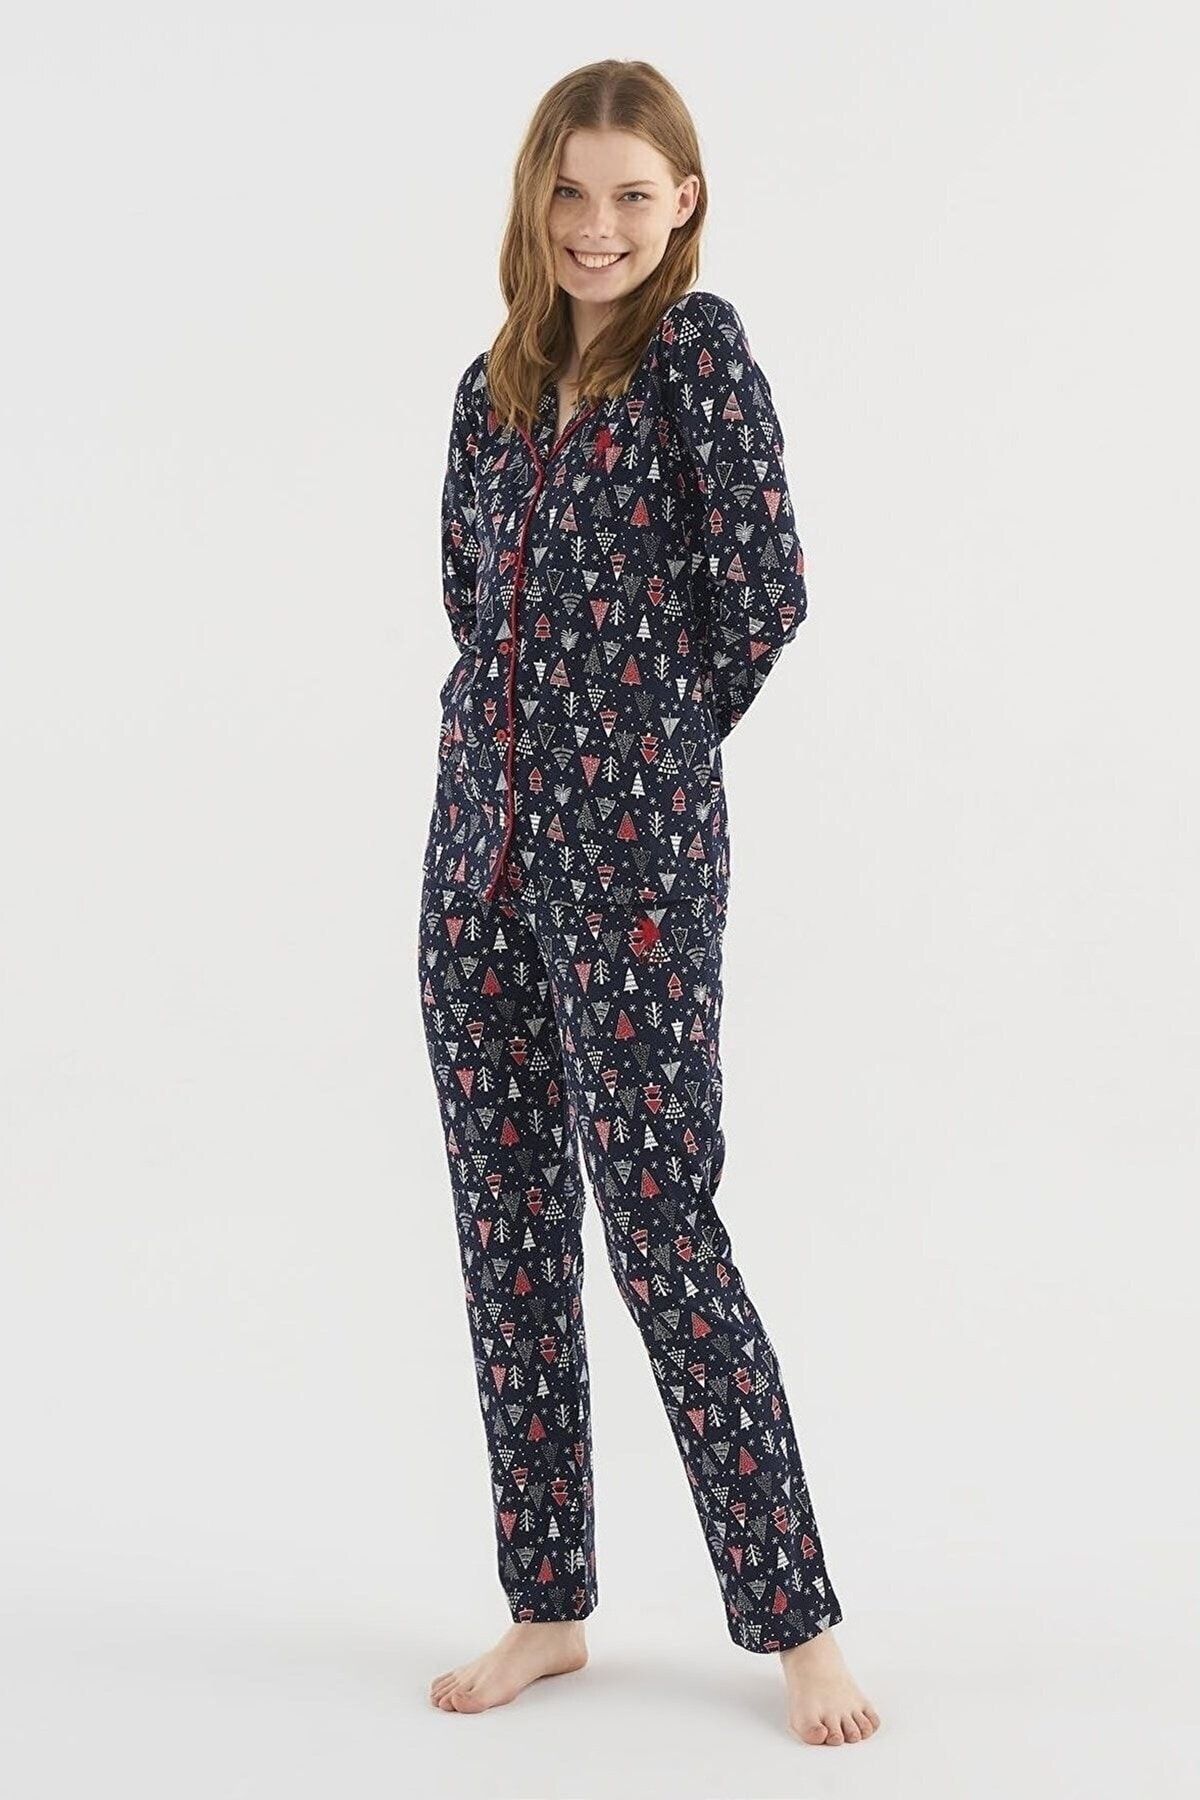 U.S. Polo Assn. Us Polo Assn Assn. 16827 Kadın Boydan Patlı Uzun Kollu Pijama Takımı-lacivert